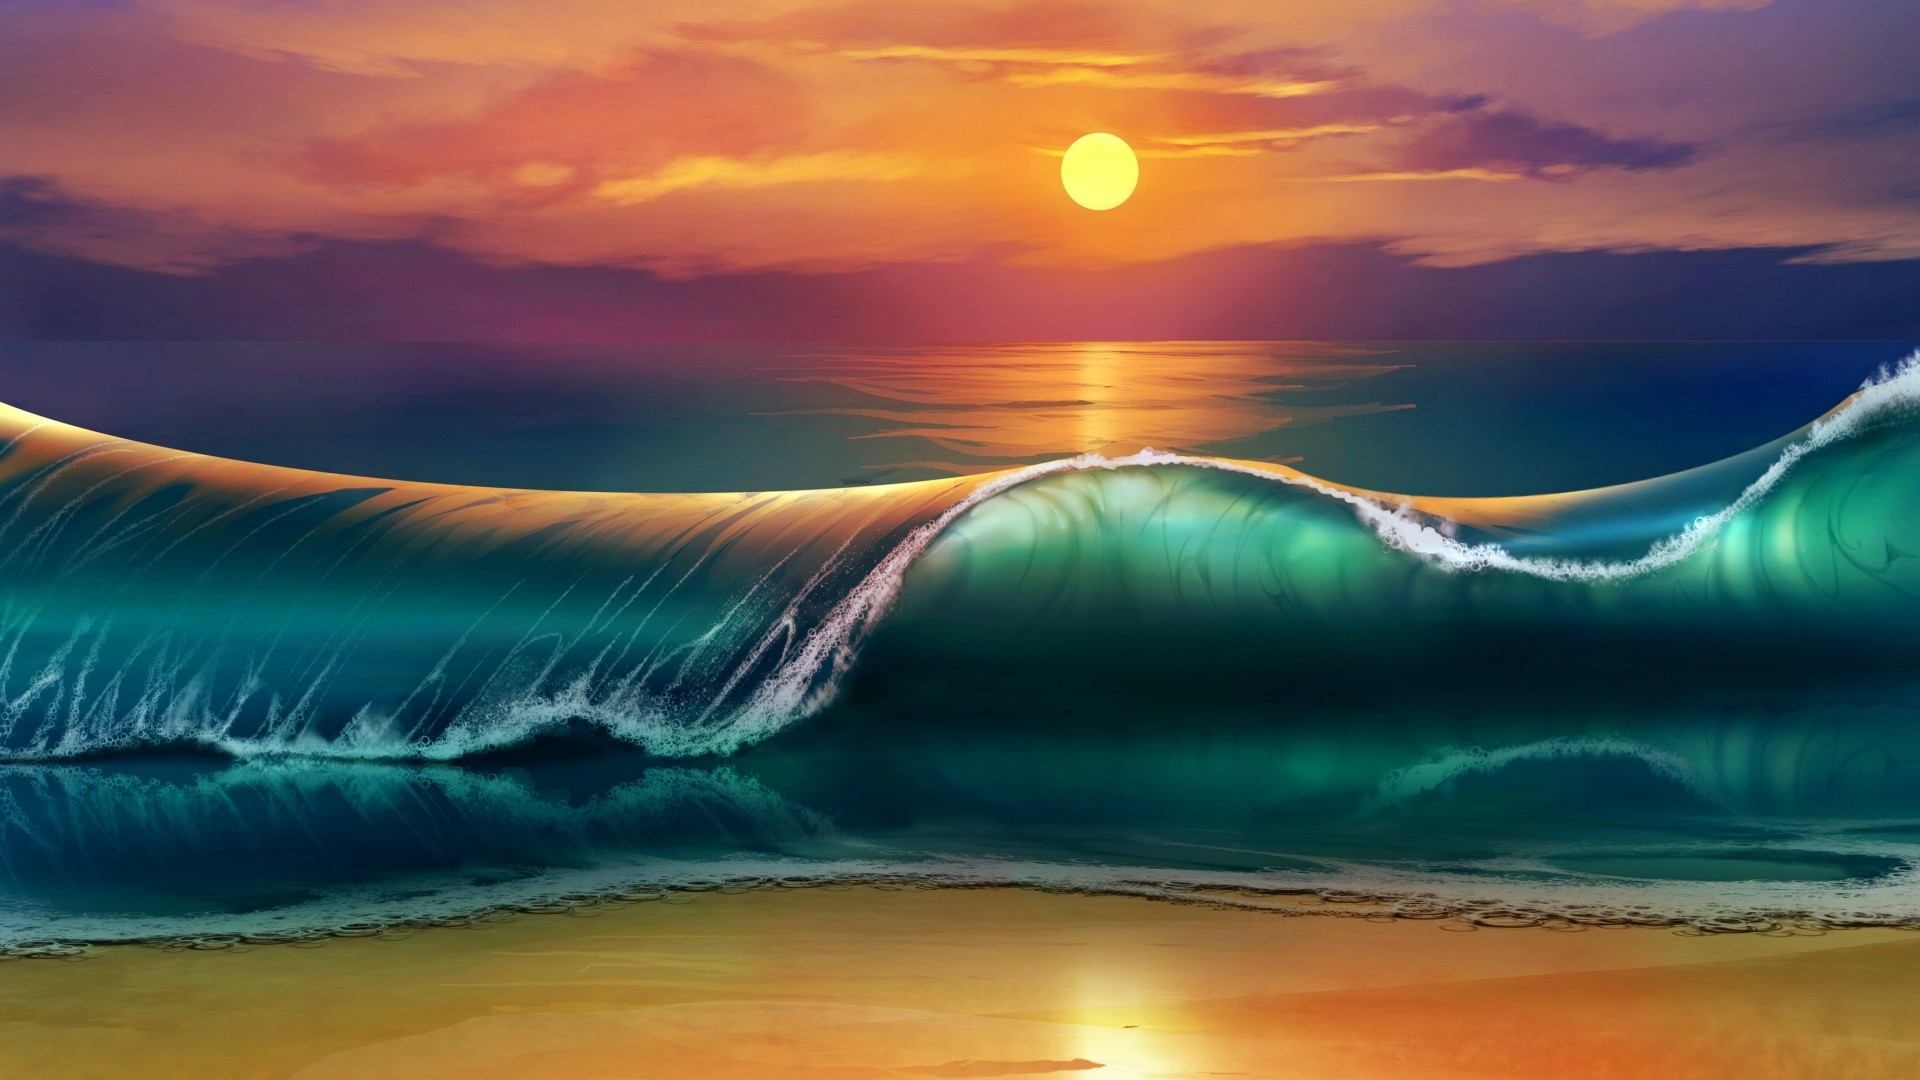 Sunset Ocean Beach Wallpapers